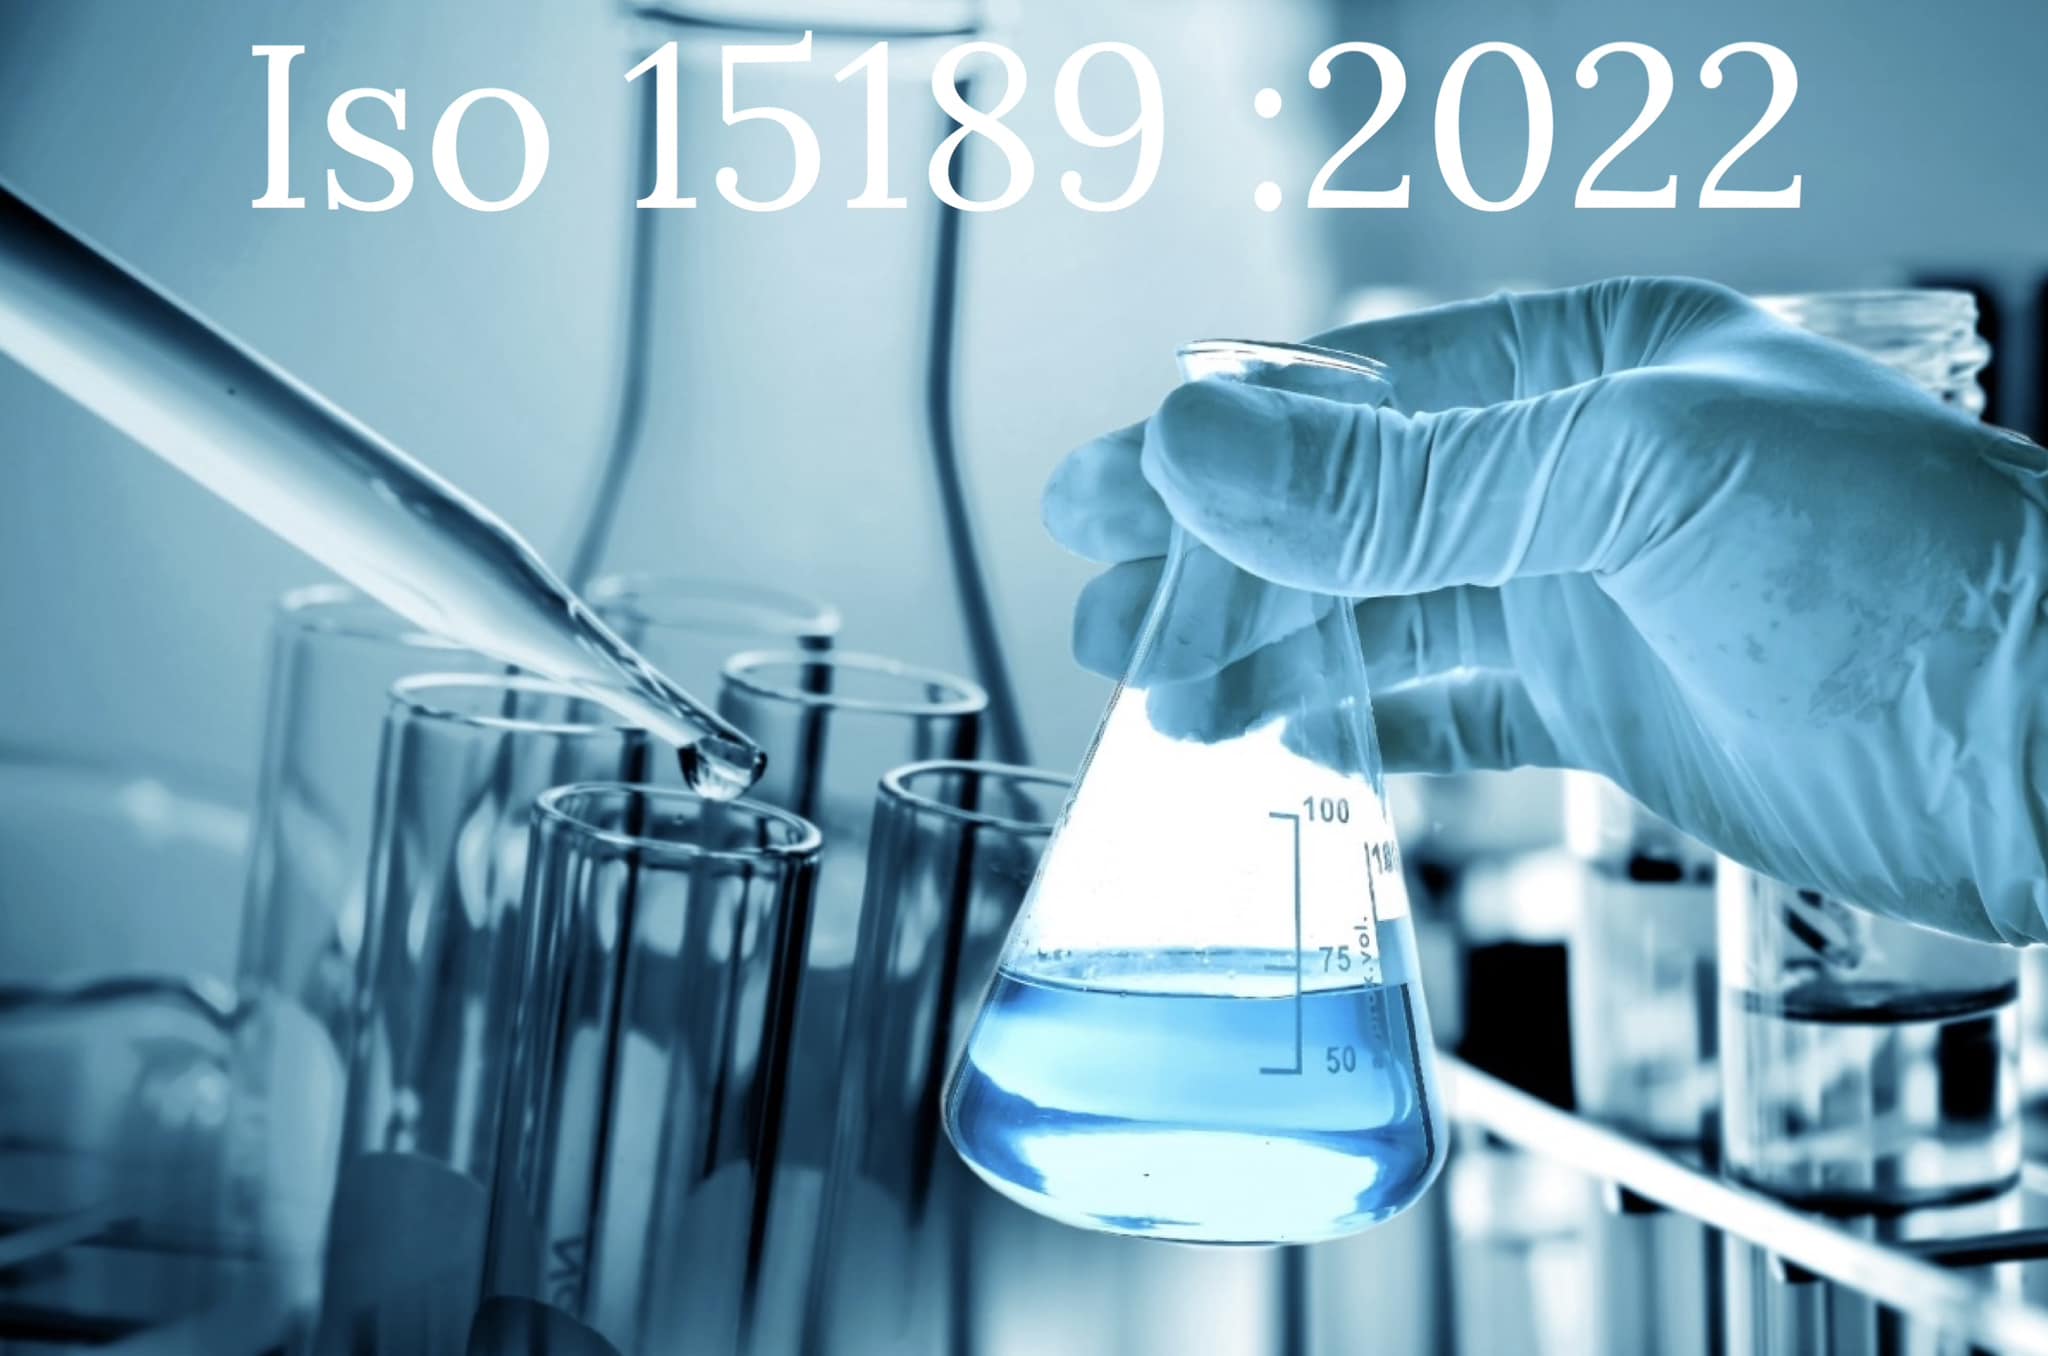 La nuova norma ISO 15189:2022 per l’accreditamento dei laboratori medici: requisiti e novità